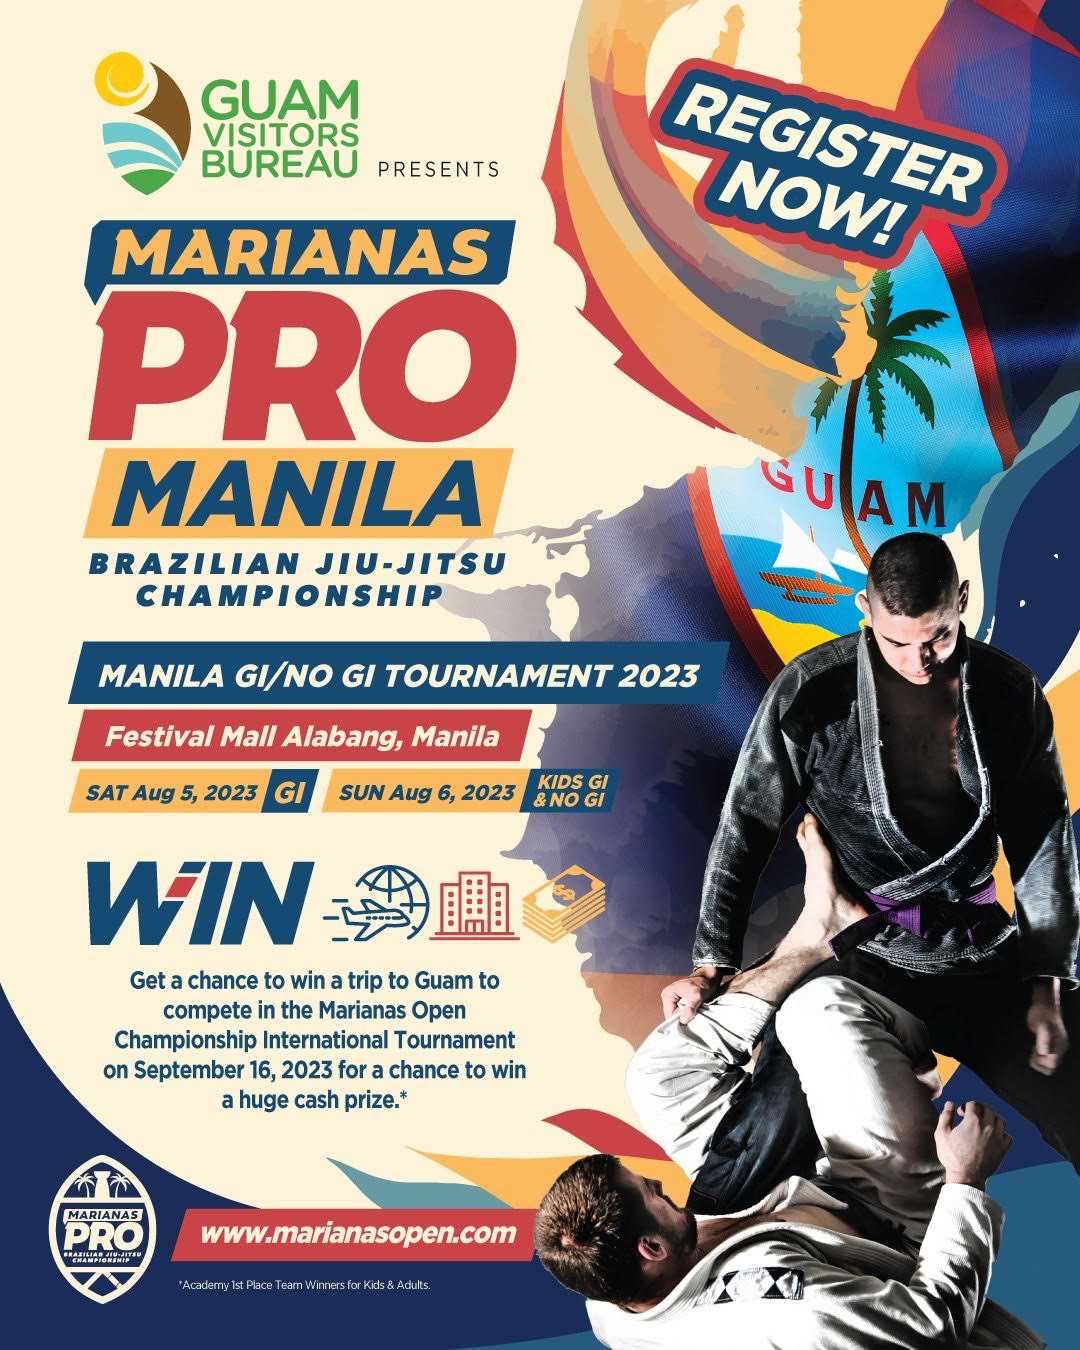 Marianas Pro Manila No-gi 2023